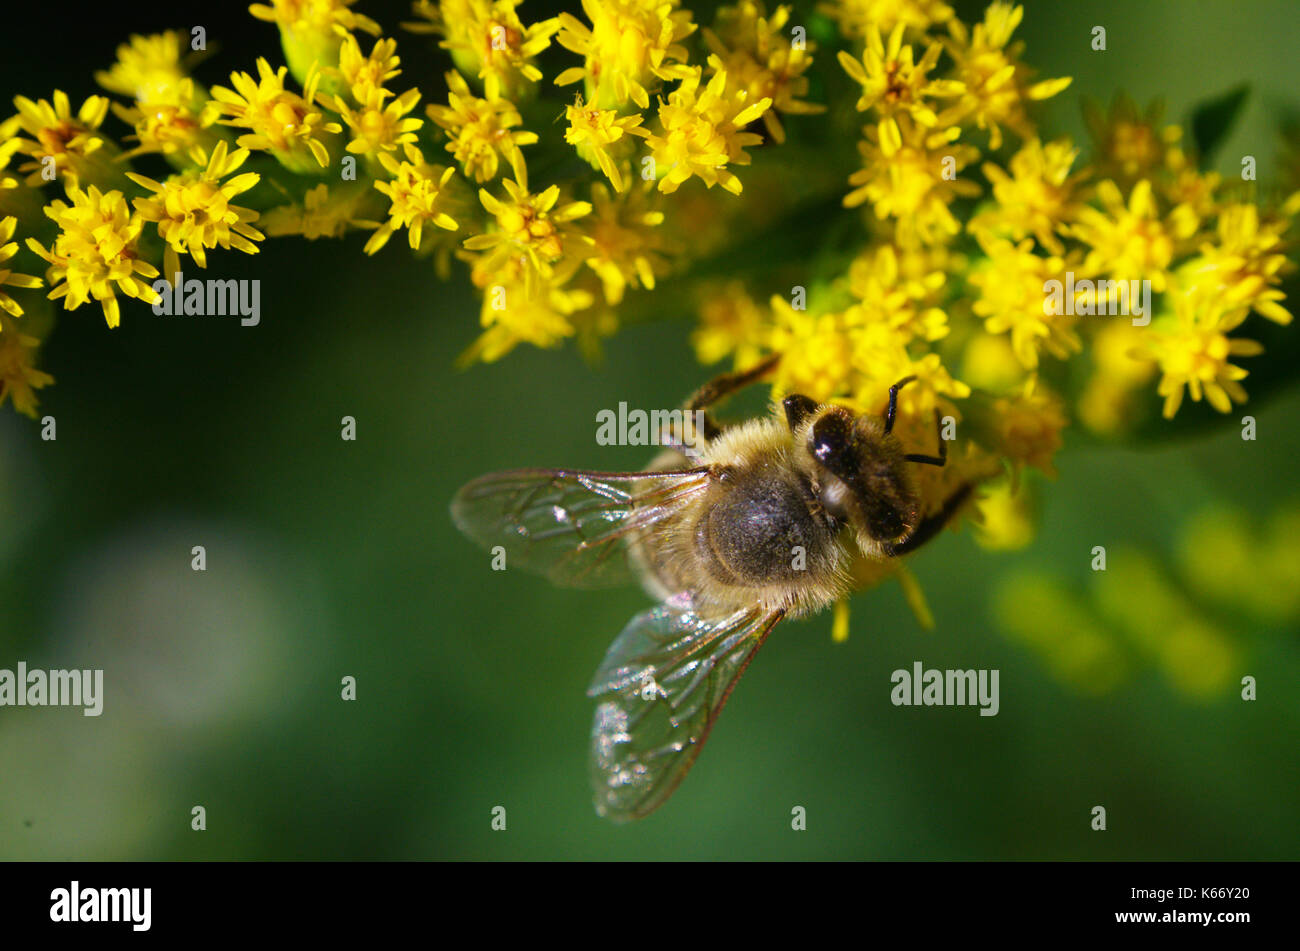 Honigbiene füttert auf gelben Goldruten bestäuben Blüten Nektar Pollen, Makro Nahaufnahme Foto von Insekten, Kanada. Stockfoto